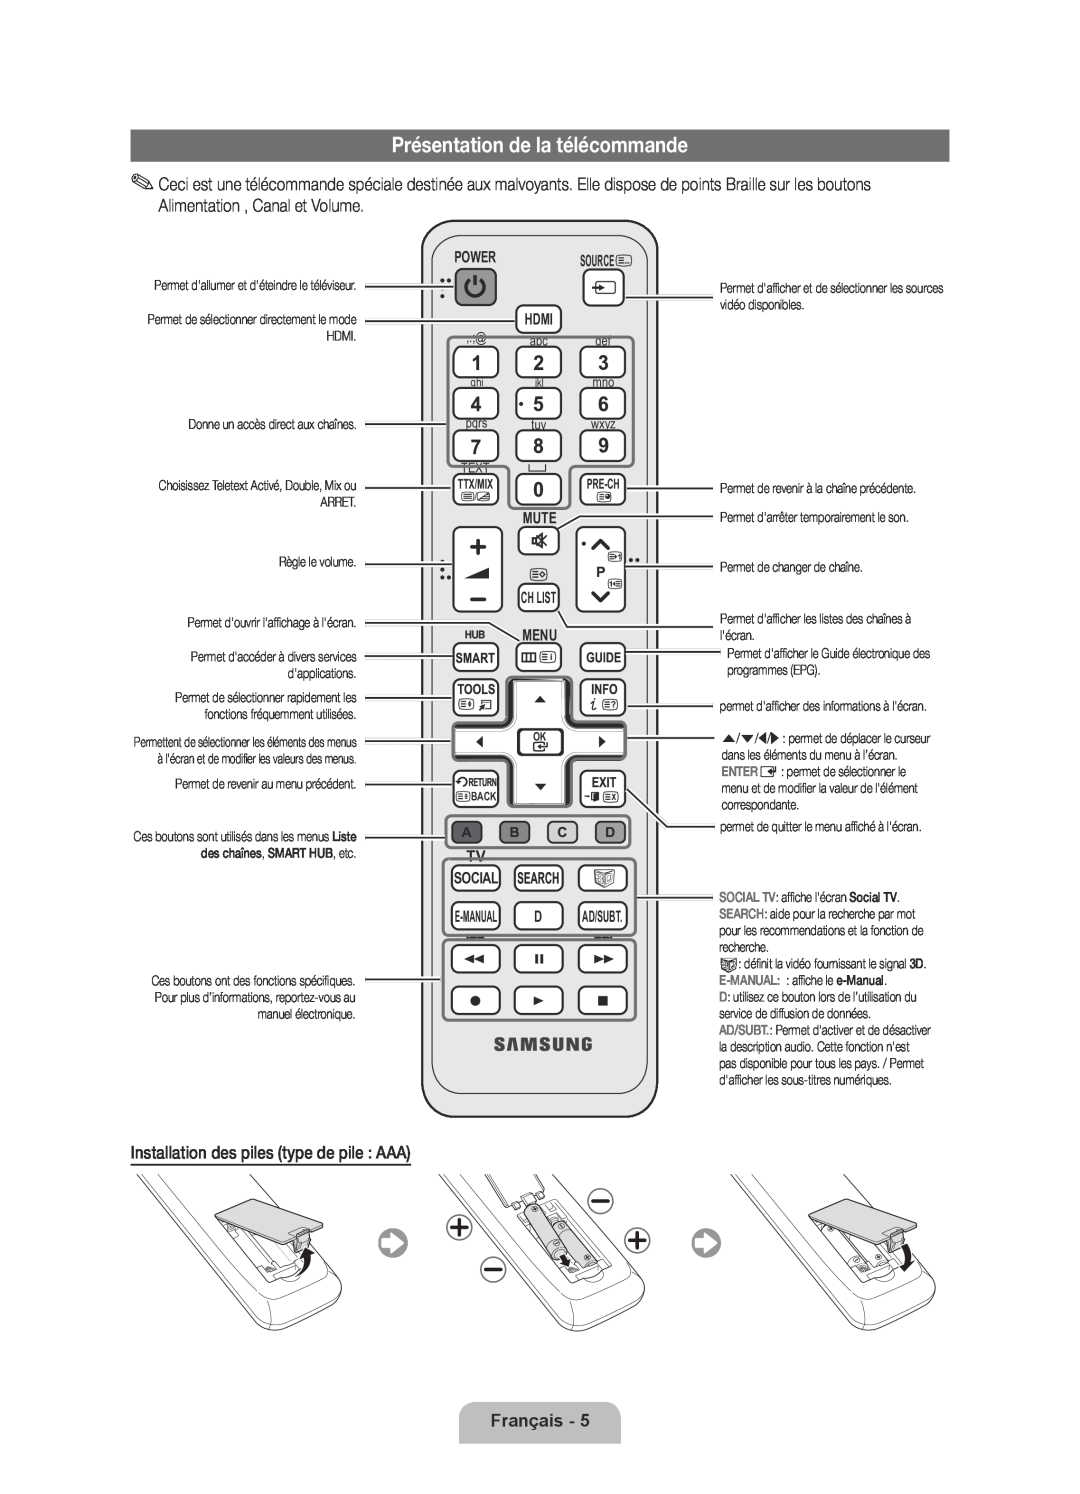 Samsung UE46D6000TPXZT Présentation de la télécommande, Français, Source, Menu, Tv Social E-Manual D, Ad/Subt, Ch List 